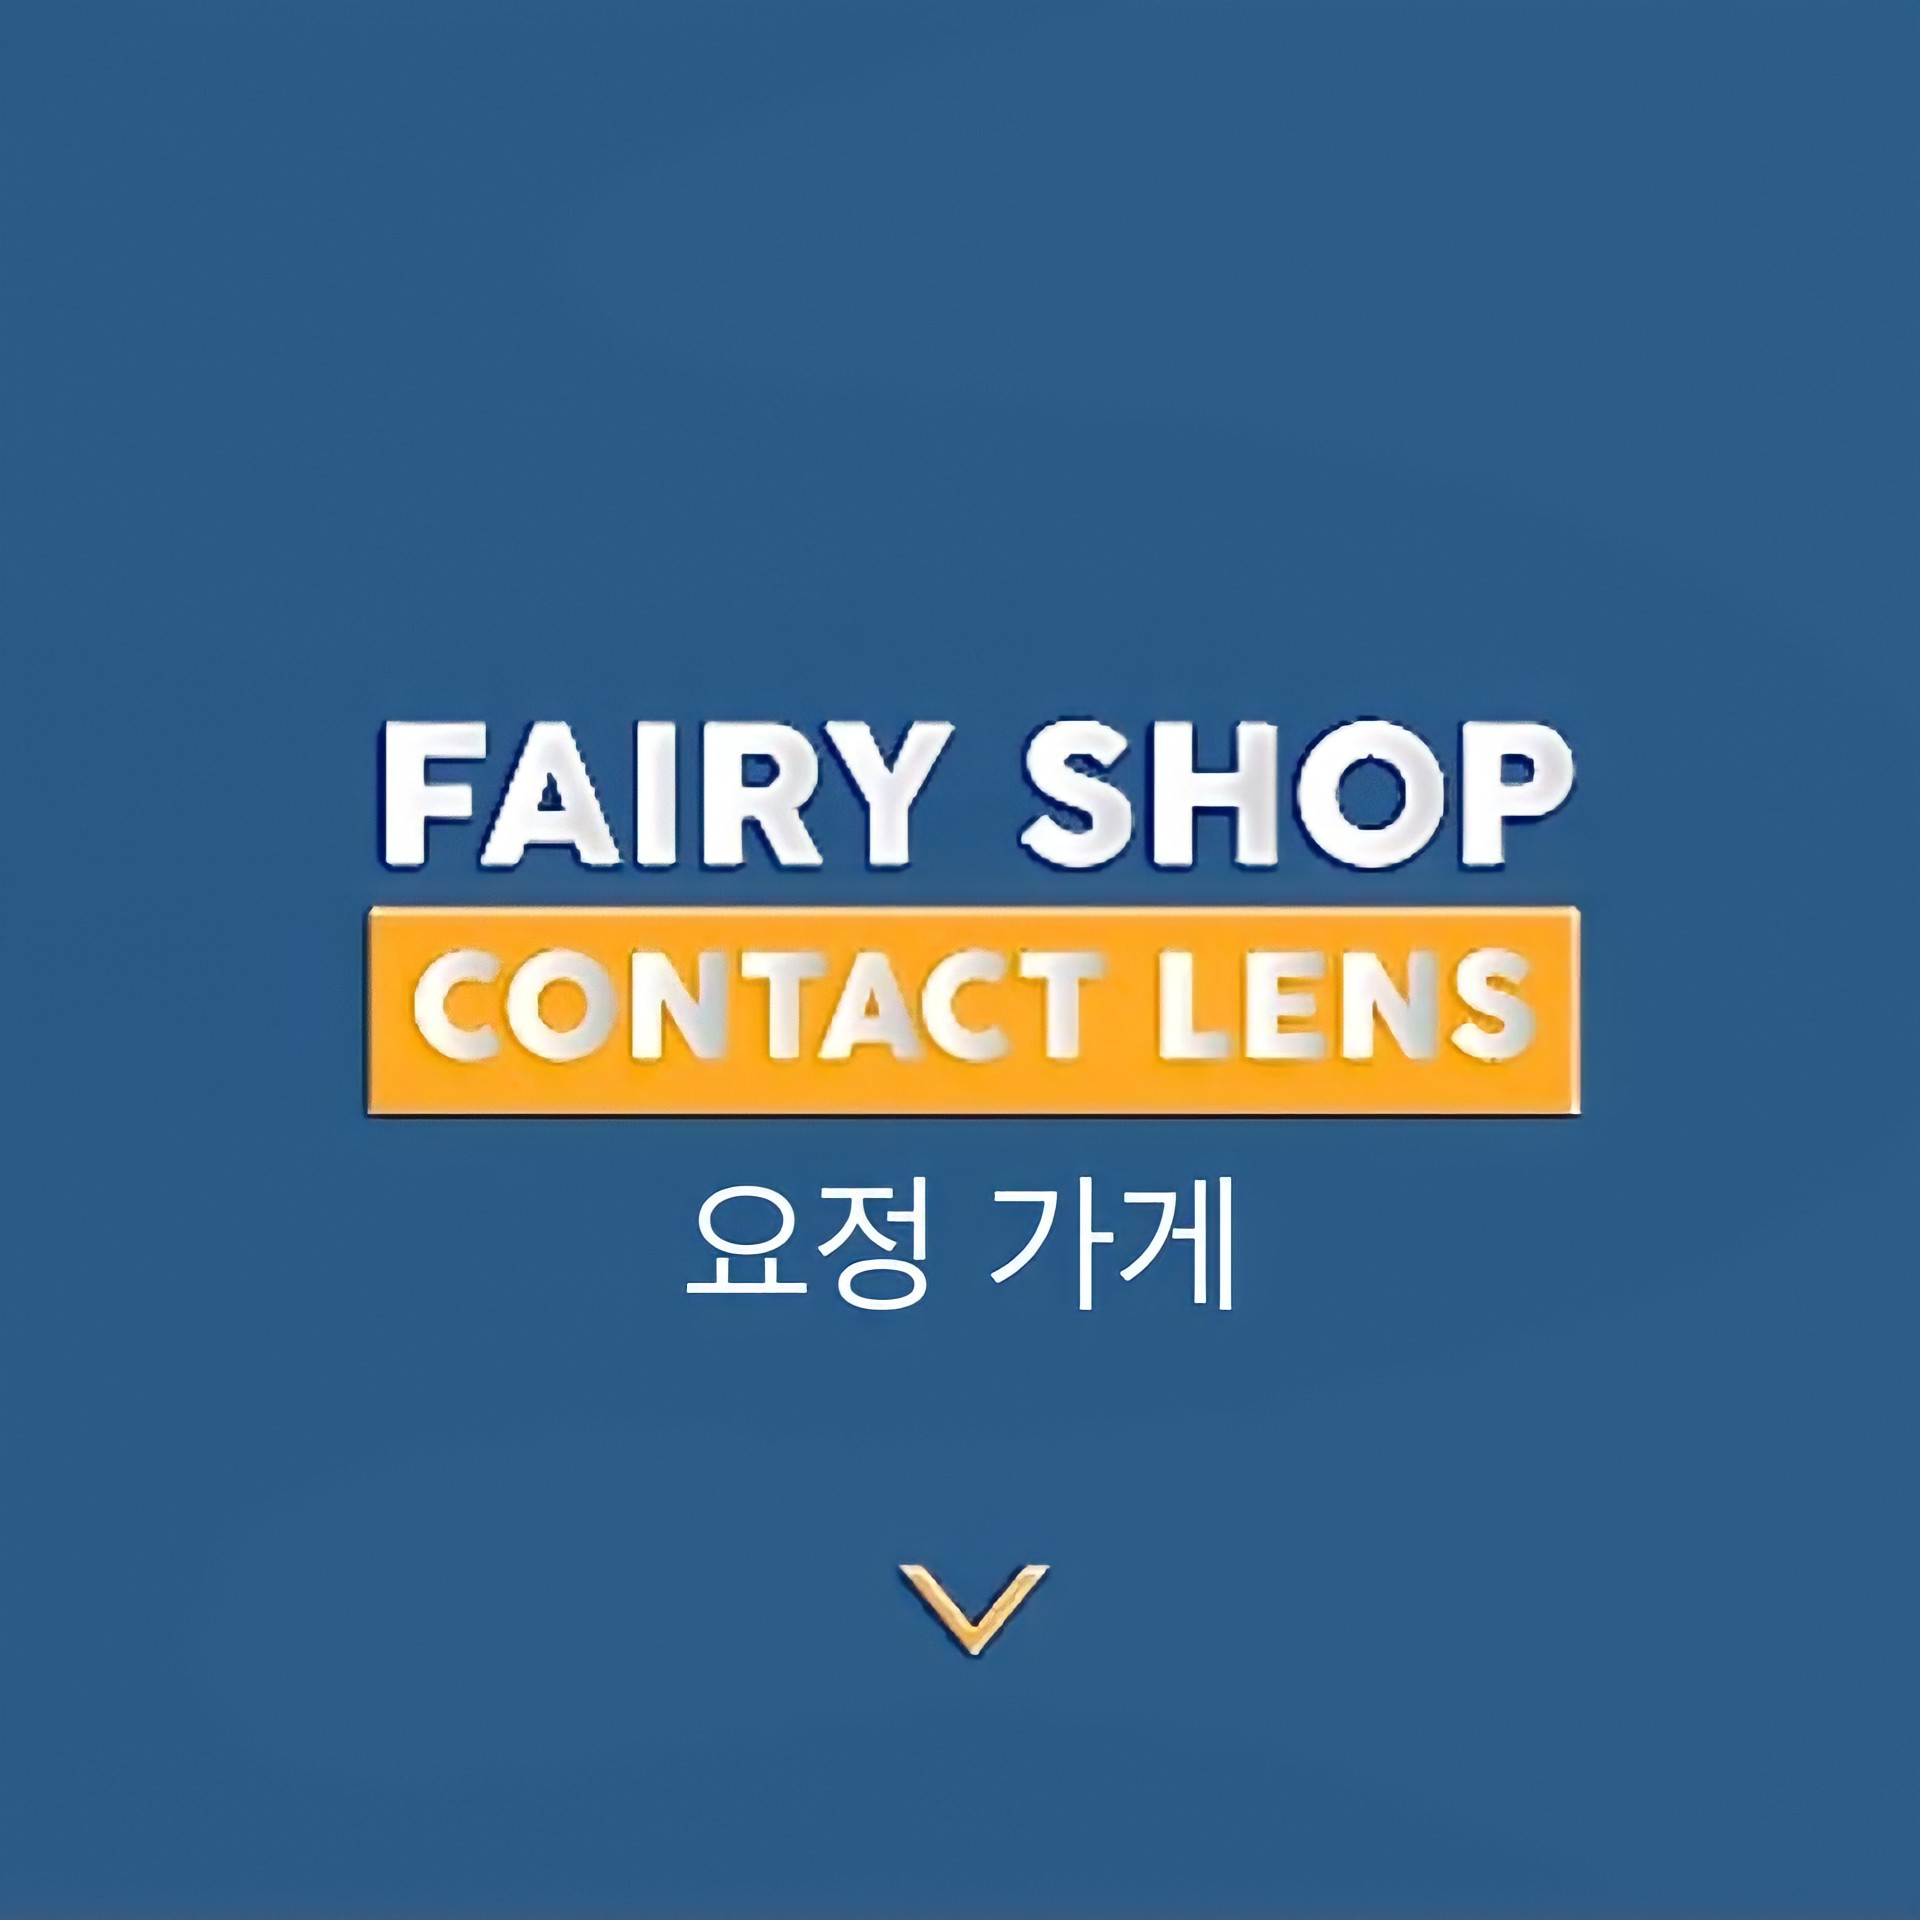 Fairy Shop Contact Lens